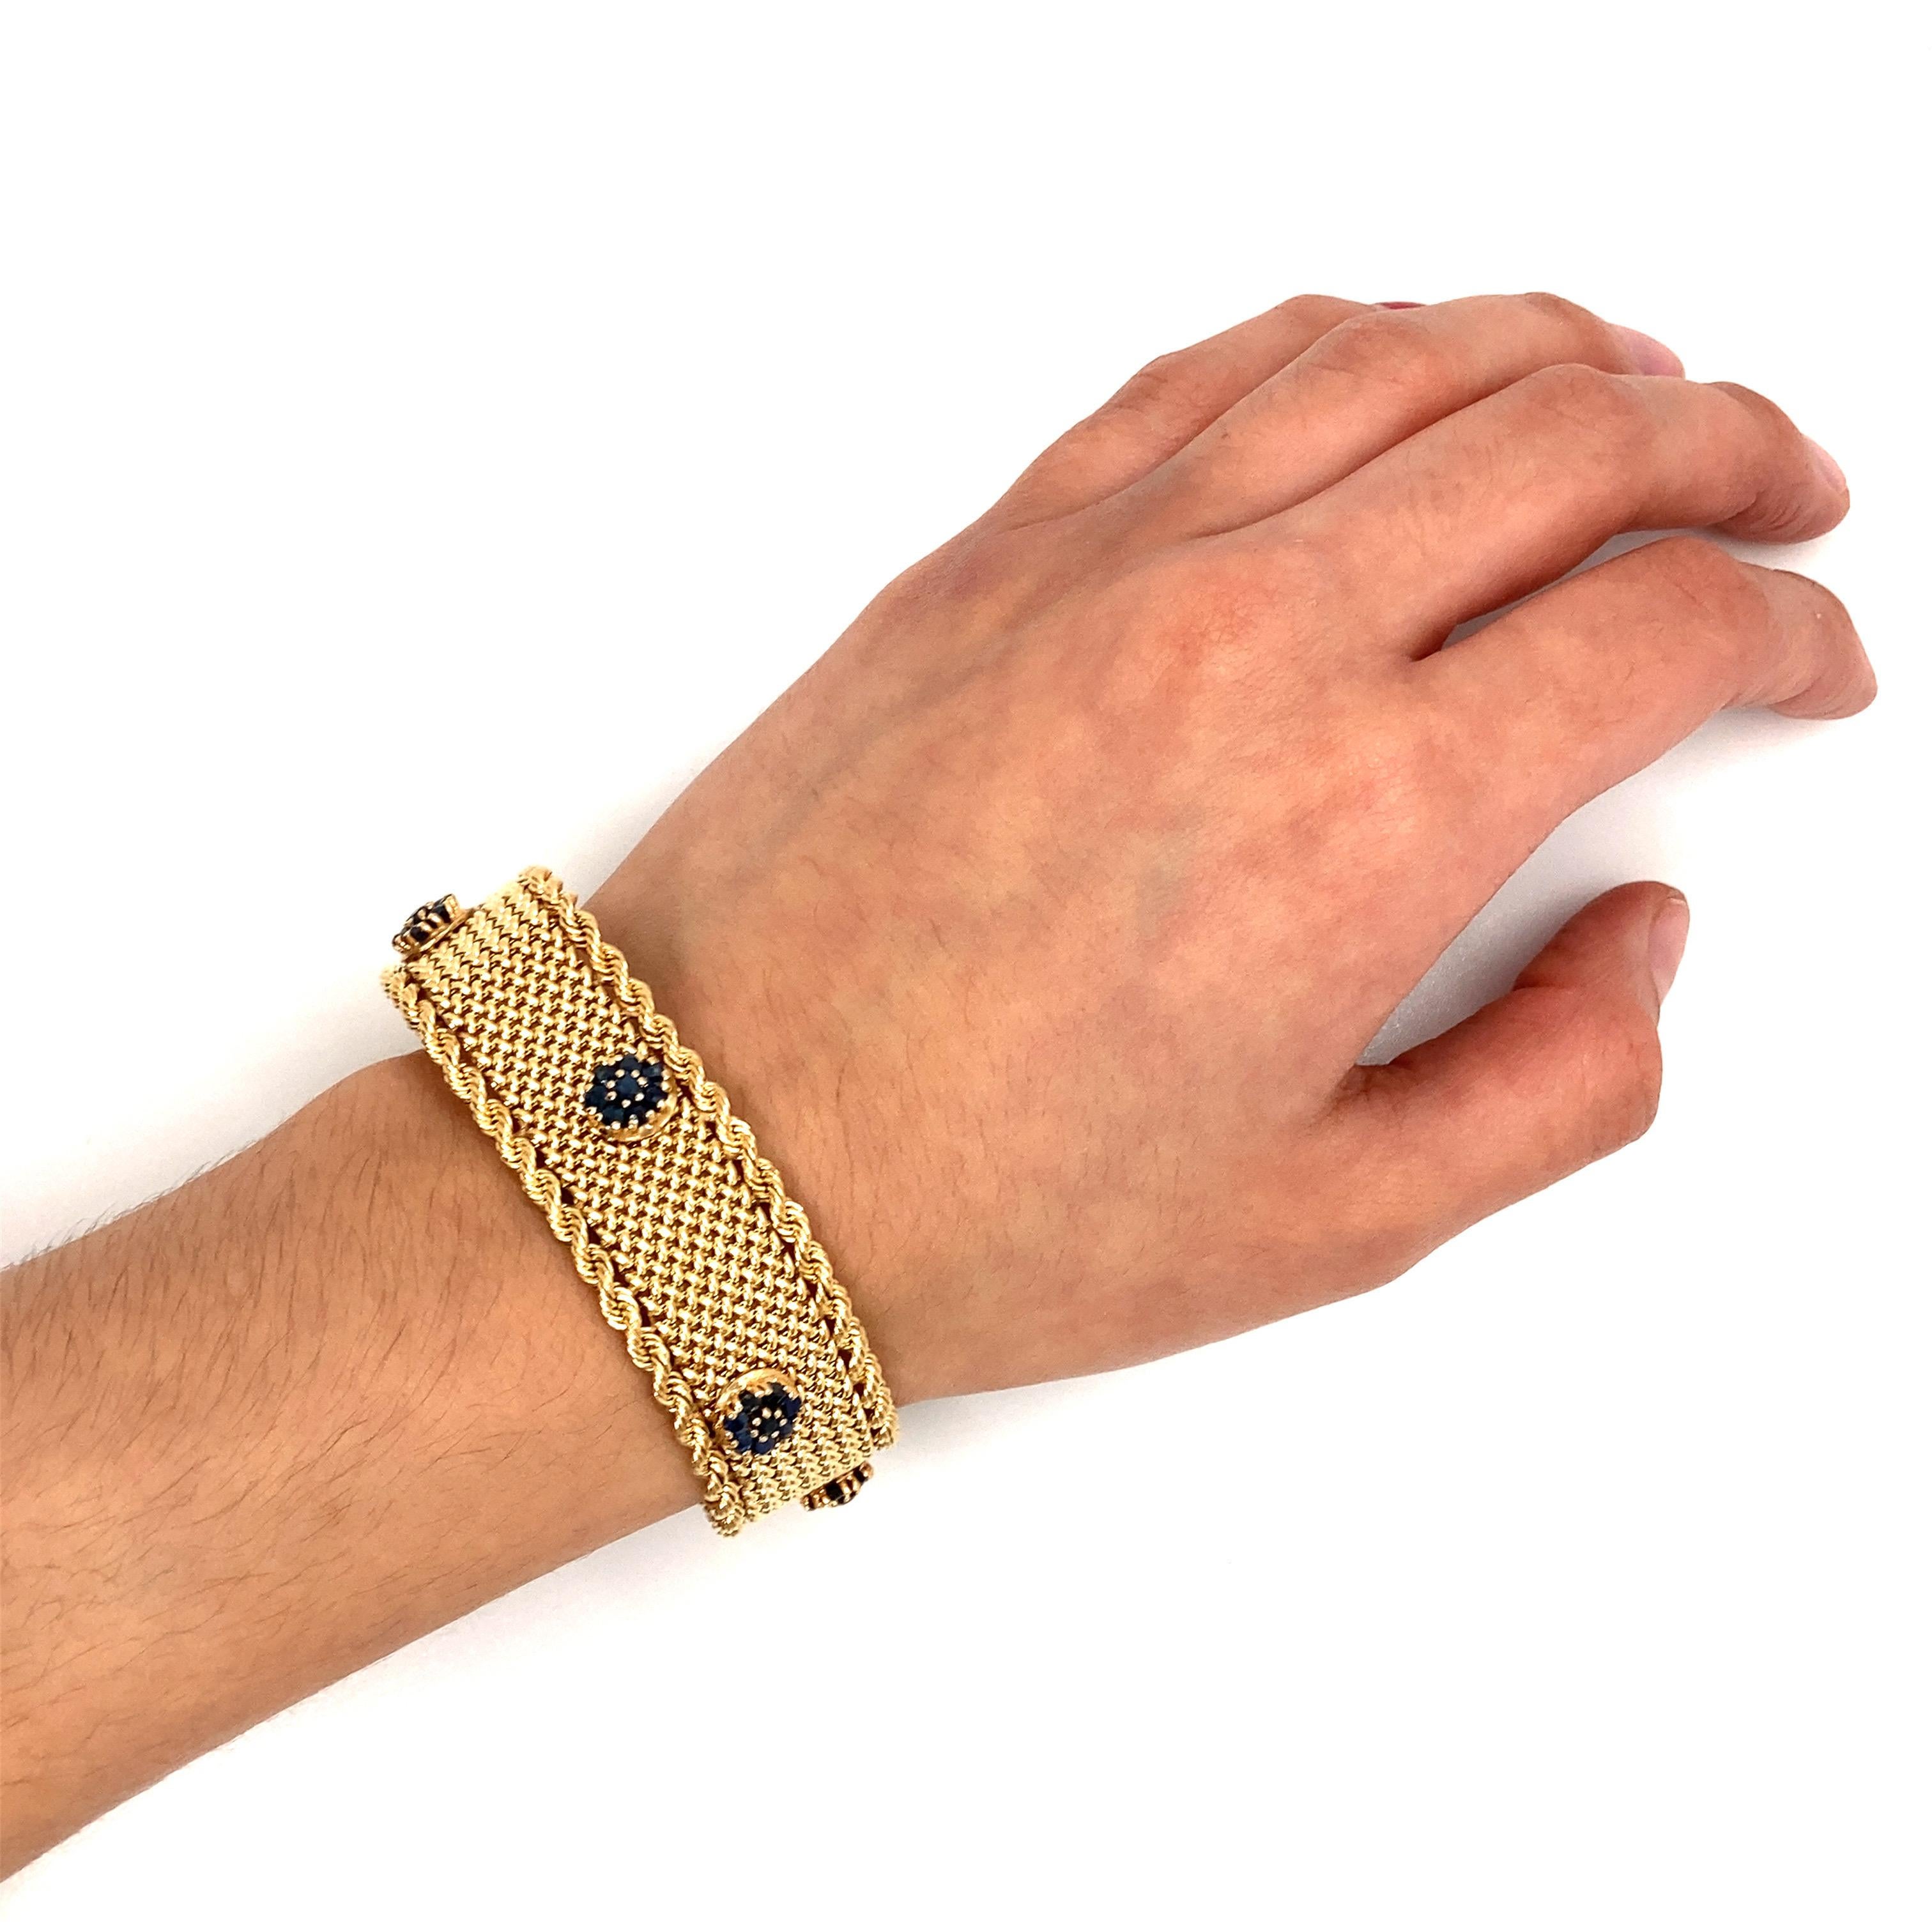 Dieses exquisite Vintage-Armband ist ein echtes Statement. Er ist aus luxuriösem 14-karätigem Gelbgold gefertigt und zeichnet sich durch ein auffälliges Maschenmuster aus, das mit einem fesselnden Faltenwurf schimmert. Das Armband misst eine